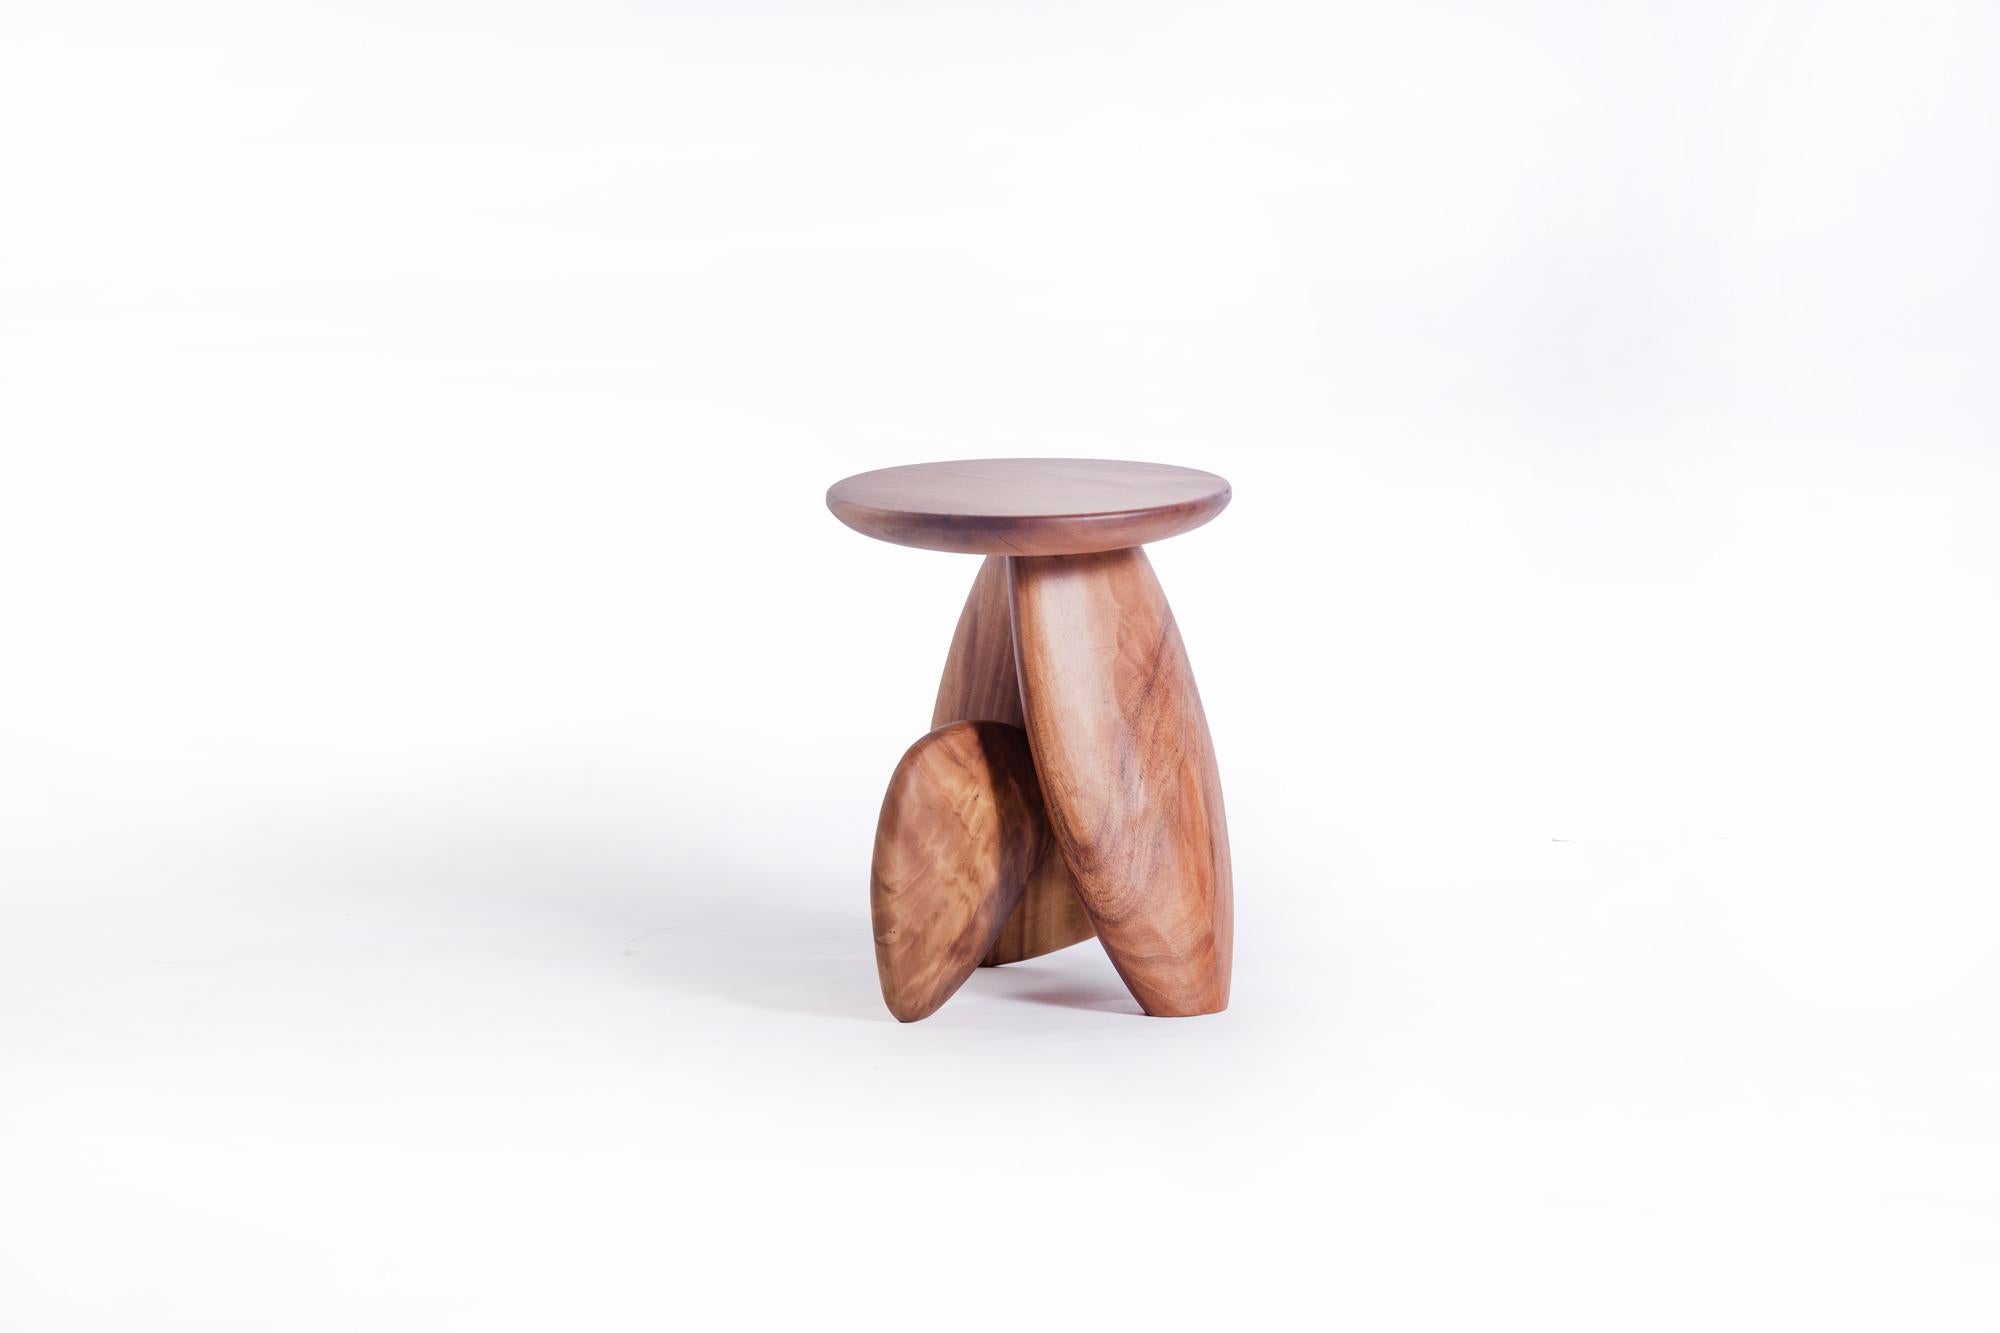 stool that looks like rocks and pebbles